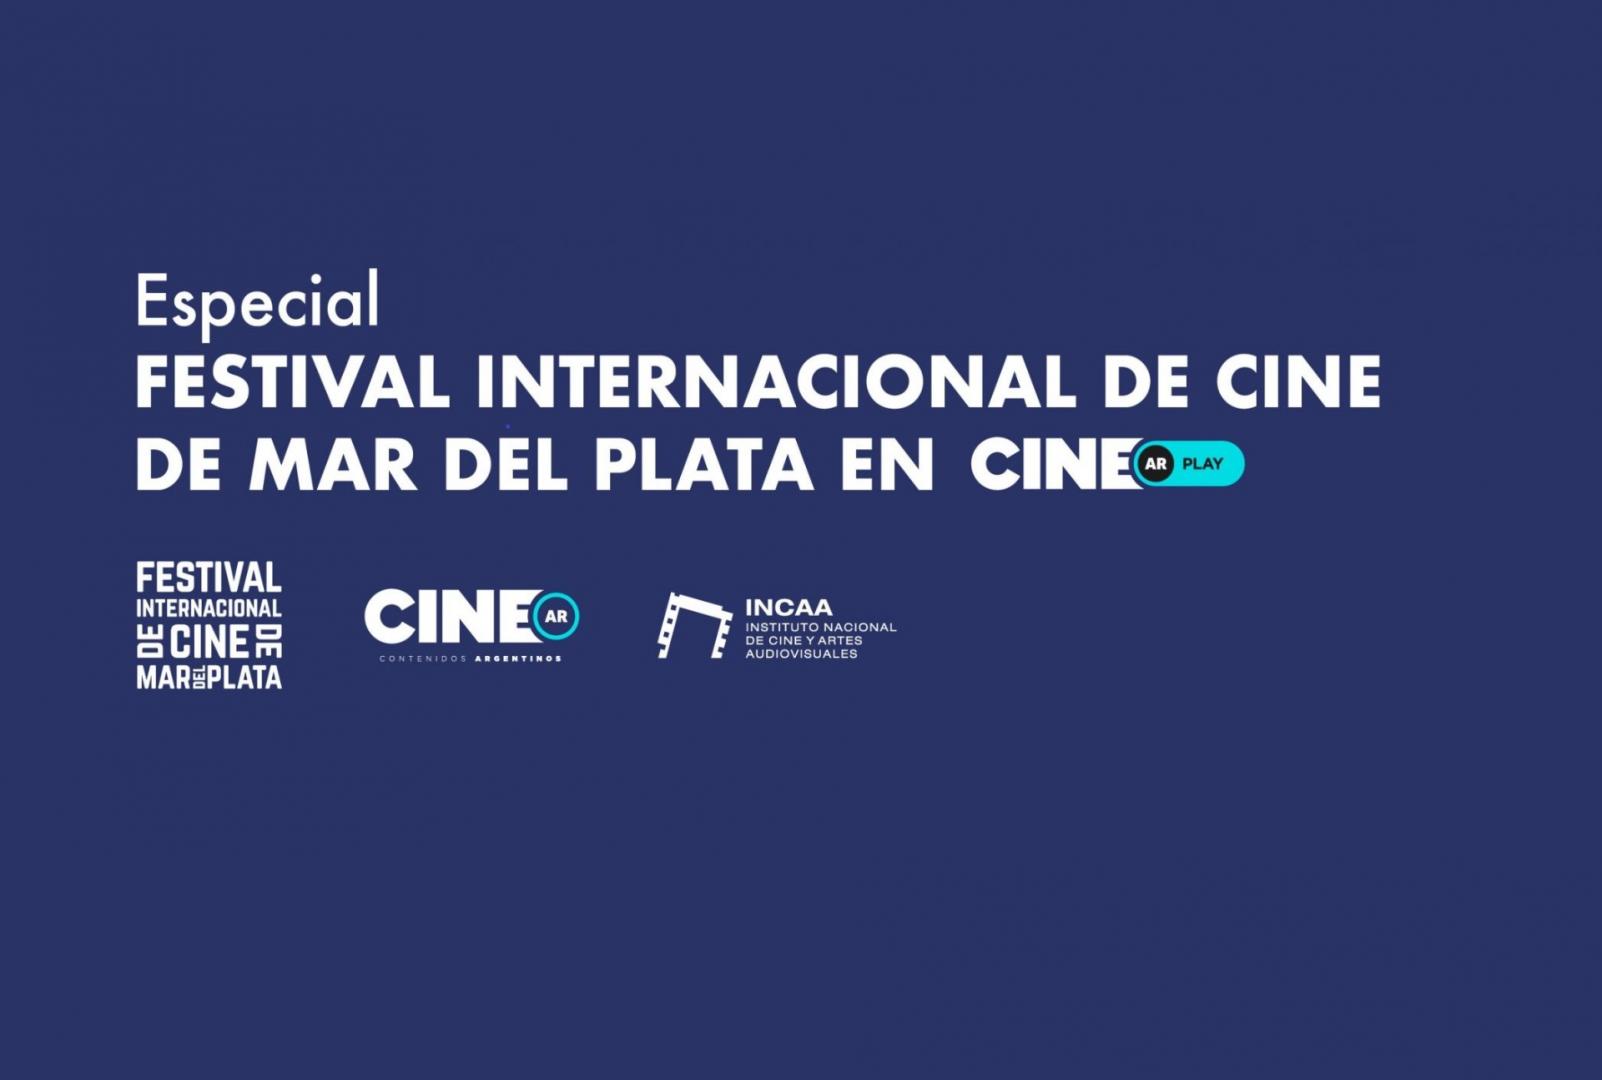 En CINE.AR Play se palpita el Festival de Cine Internacional de Mar del Plata